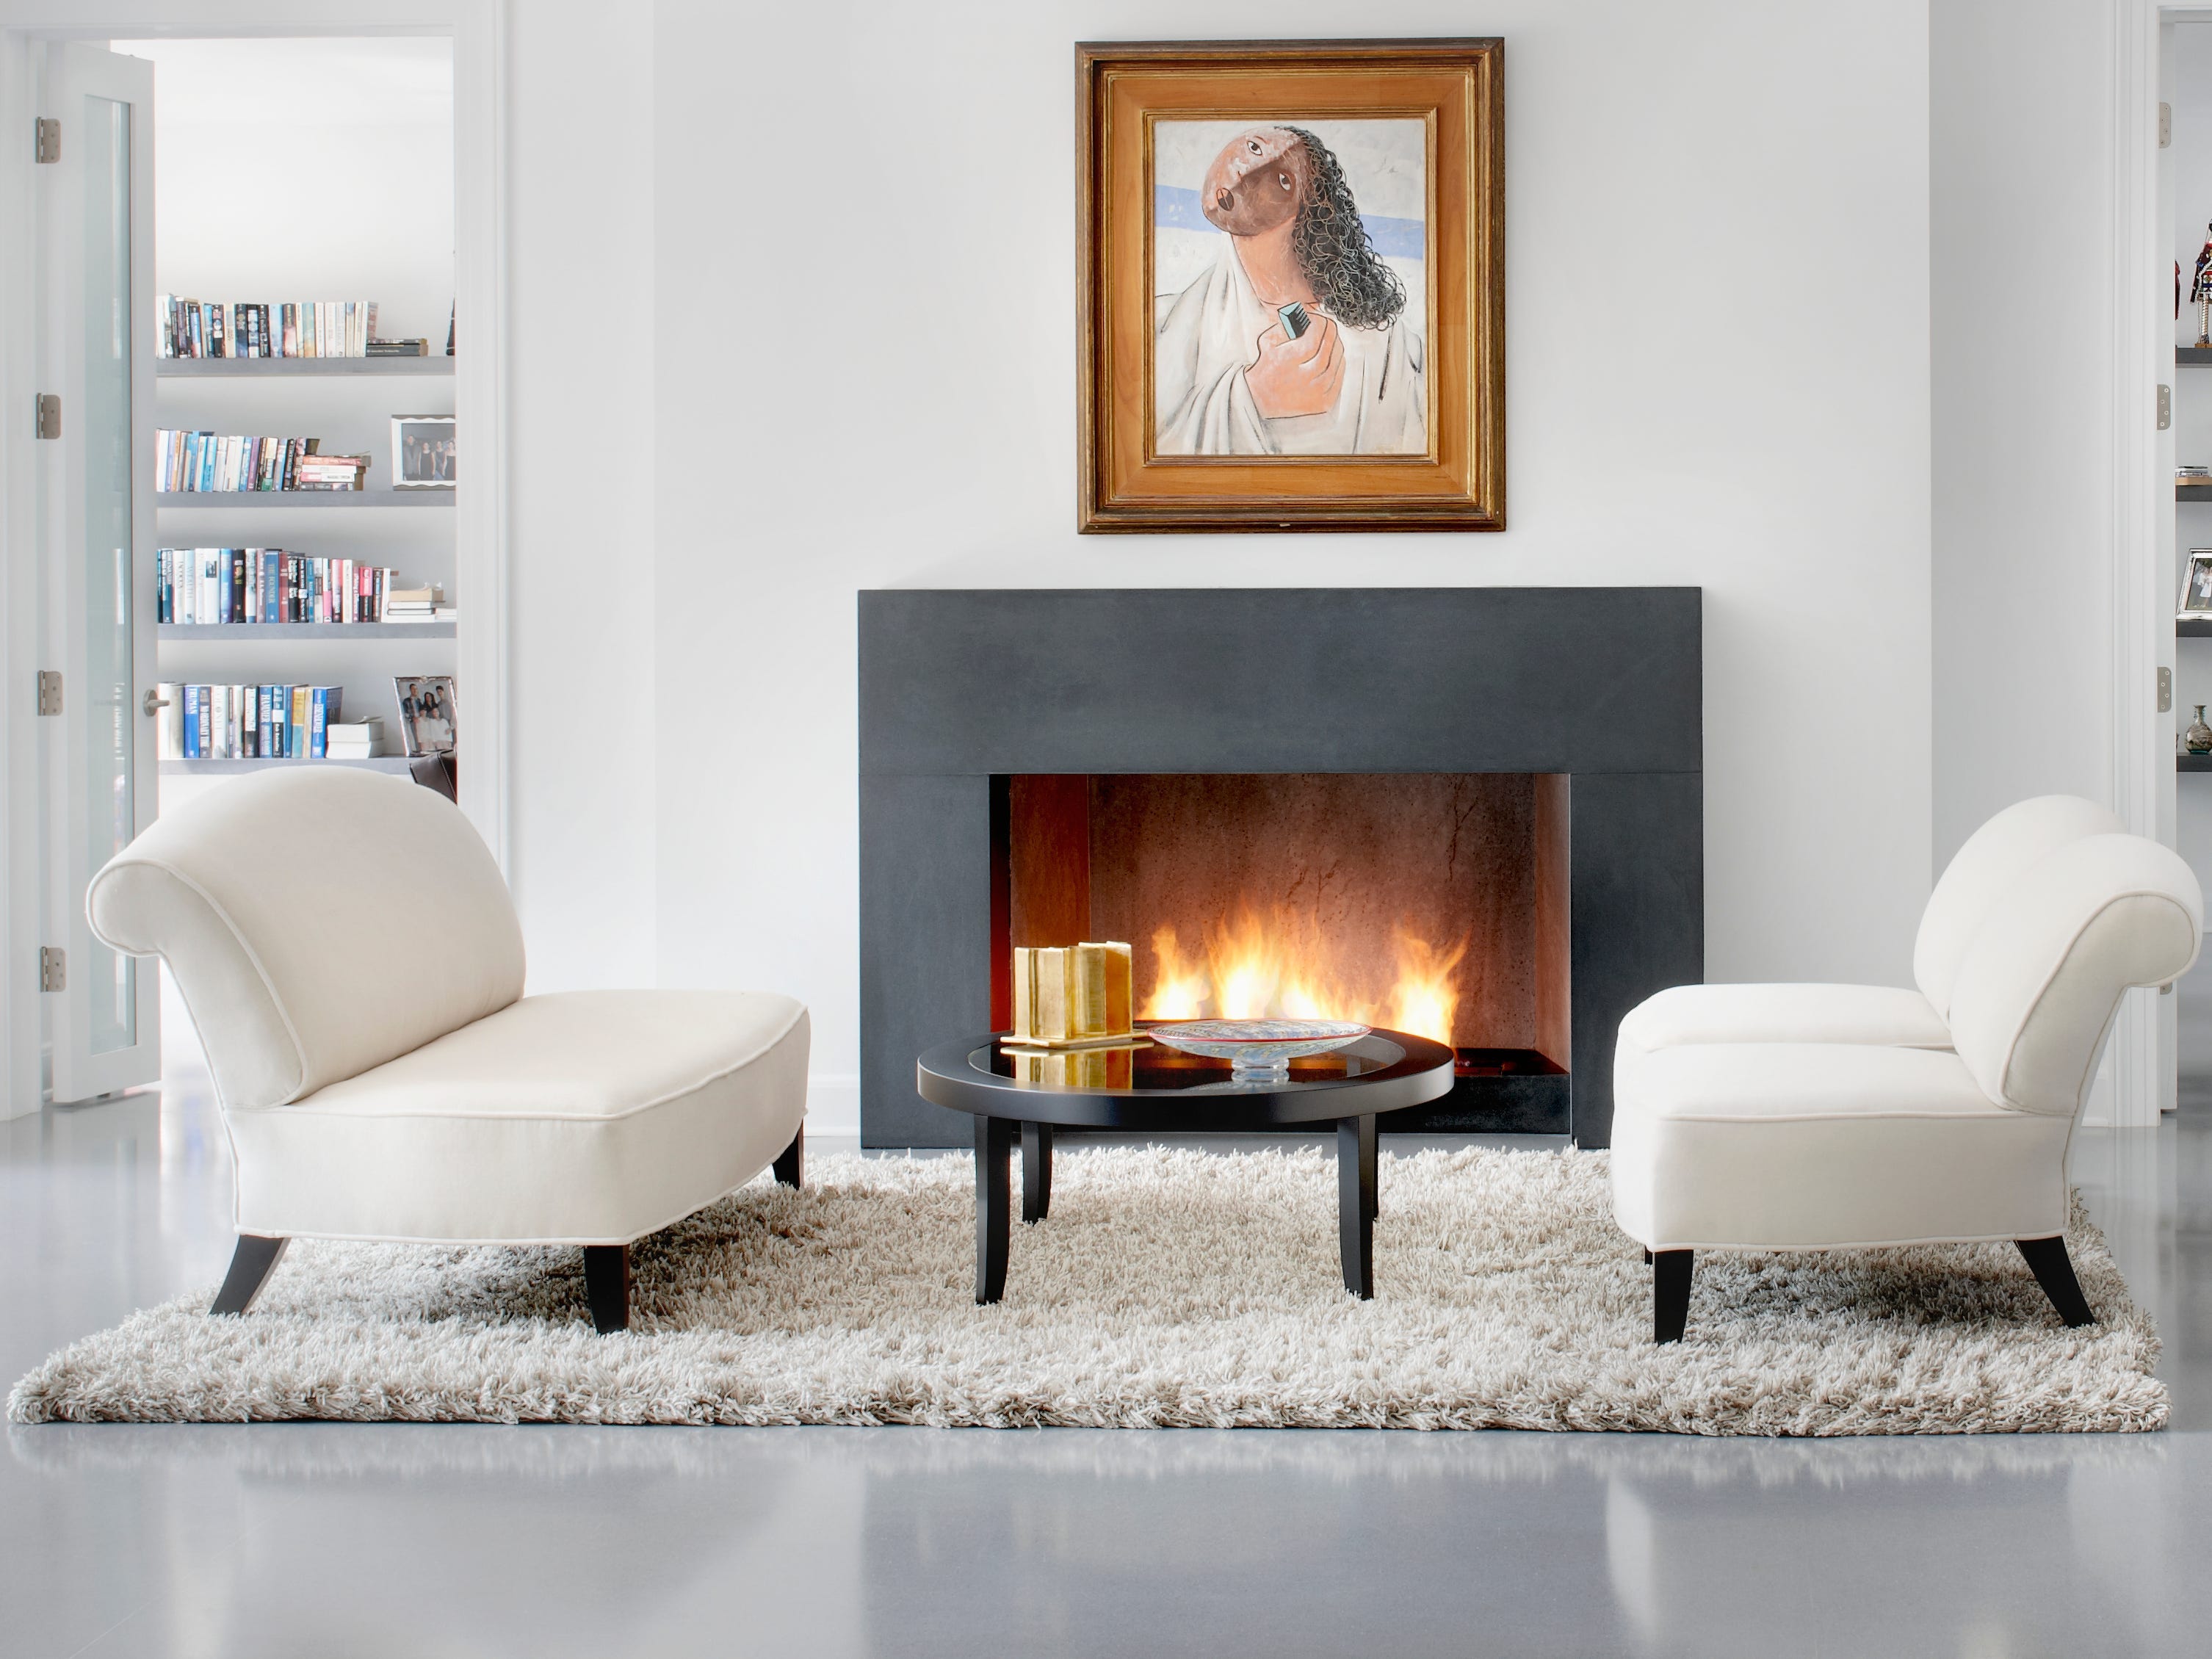 Warmweißes Wohnzimmer mit Shaggy-Teppich, cremeweißen Stühlen und einem Kamin mit einem Kunstwerk darüber, das einen abstrakten Mann darstellt